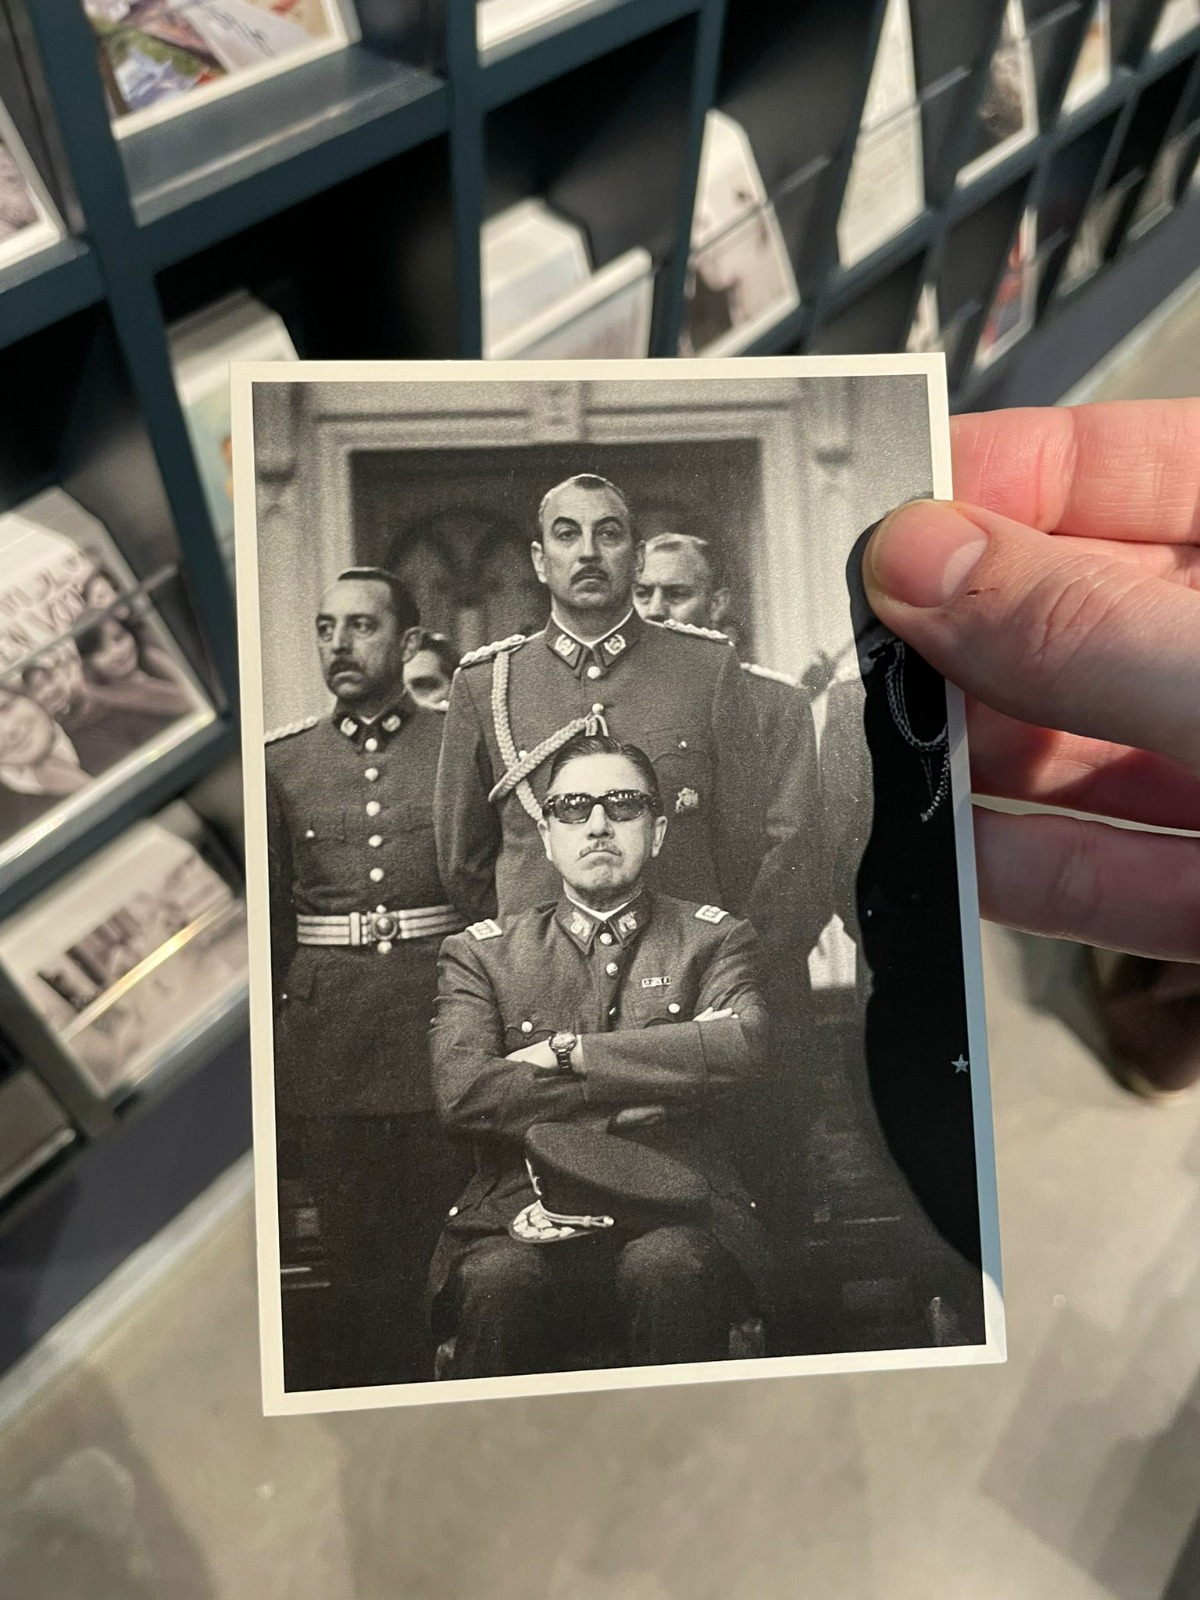 Comunidad chilena denuncia venta de imagen de Pinochet como souvenir en el Museo de Fotografía Nacional de los Países Bajos